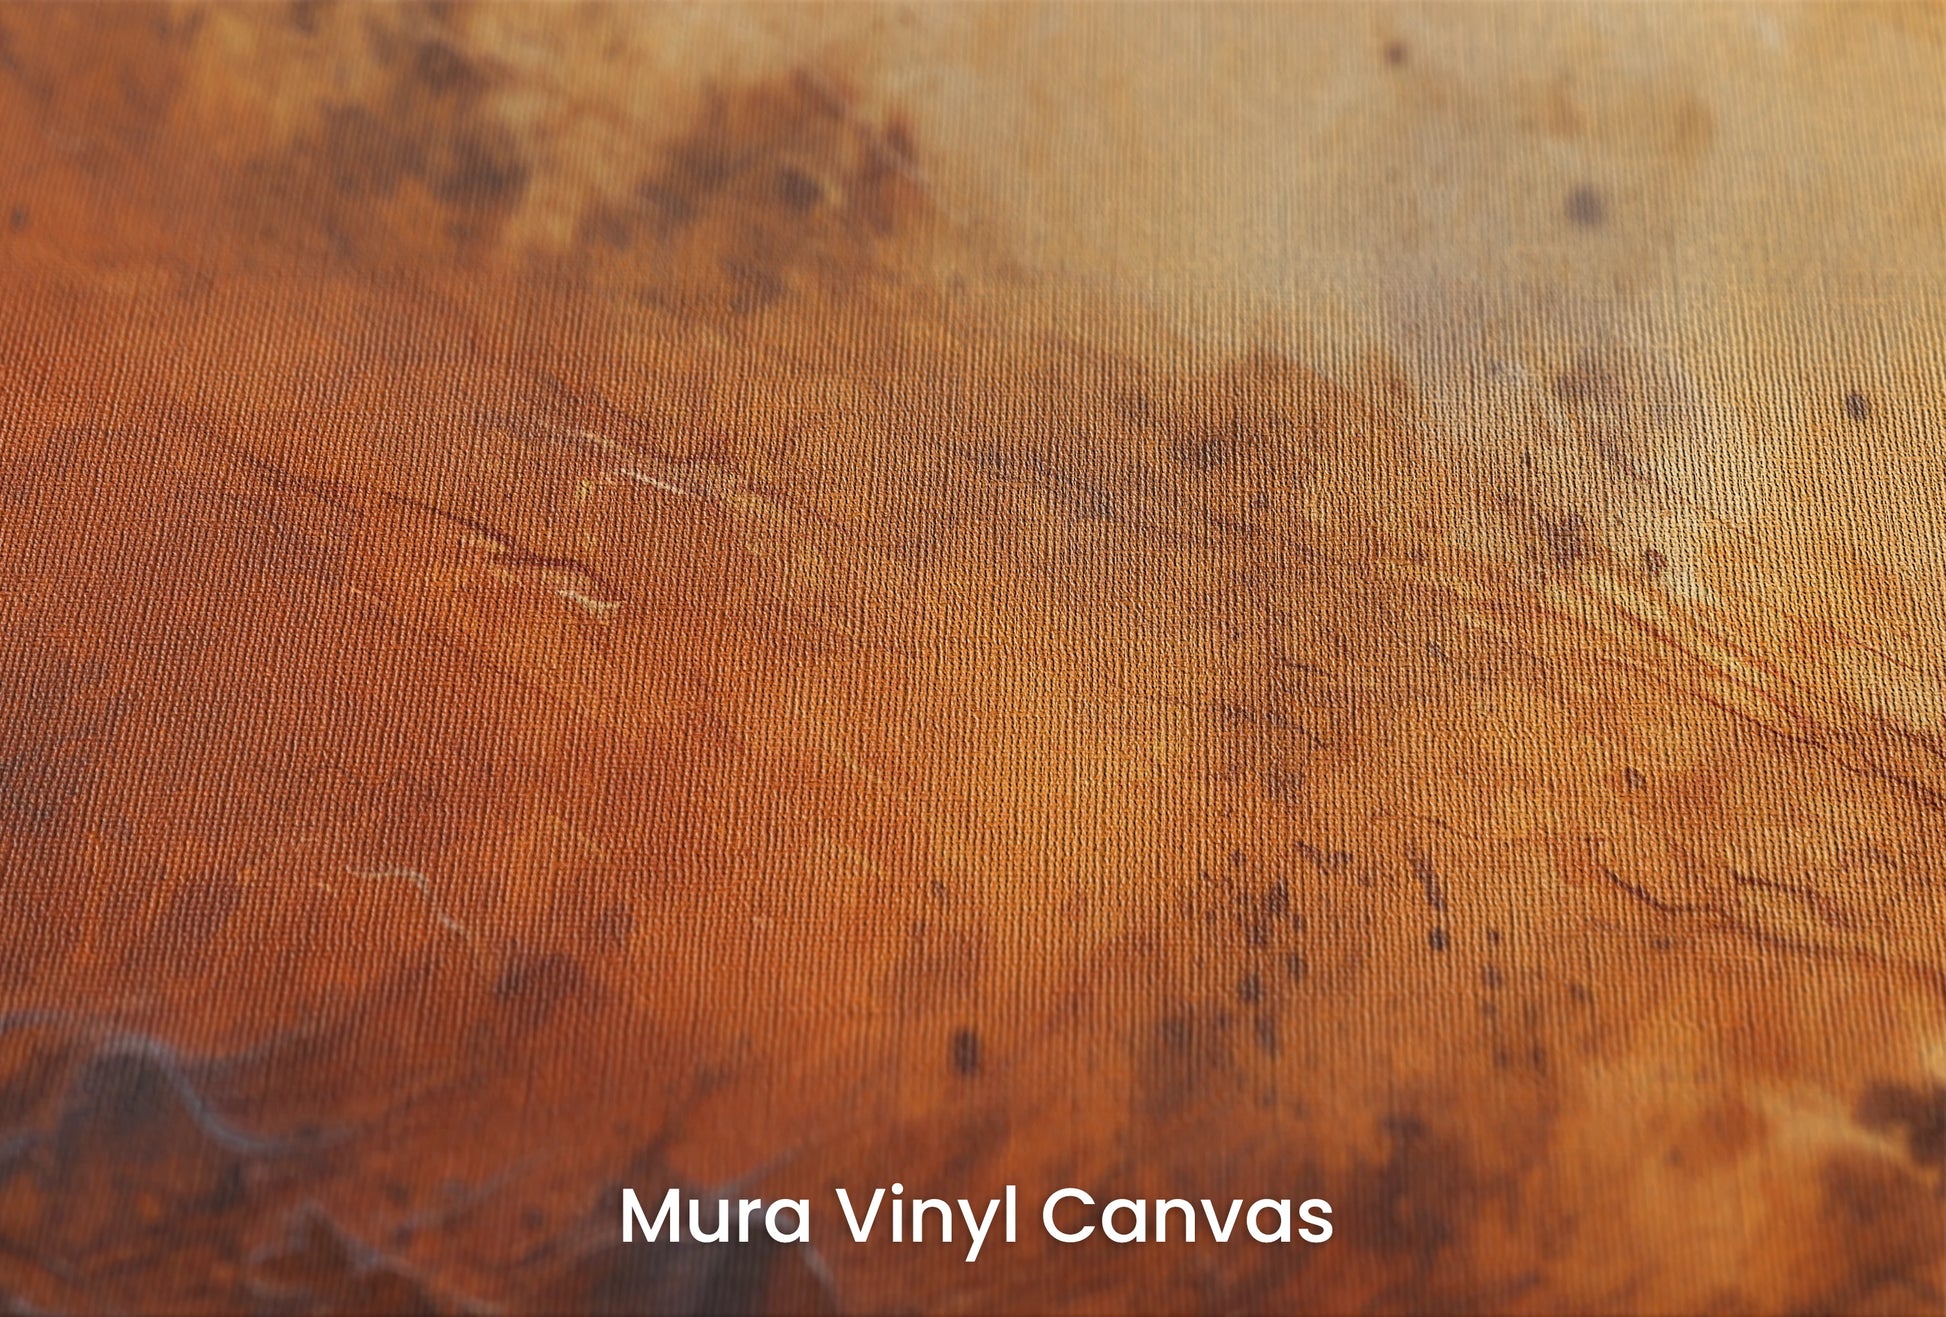 Zbliżenie na artystyczną fototapetę o nazwie Martian Winds na podłożu Mura Vinyl Canvas - faktura naturalnego płótna.